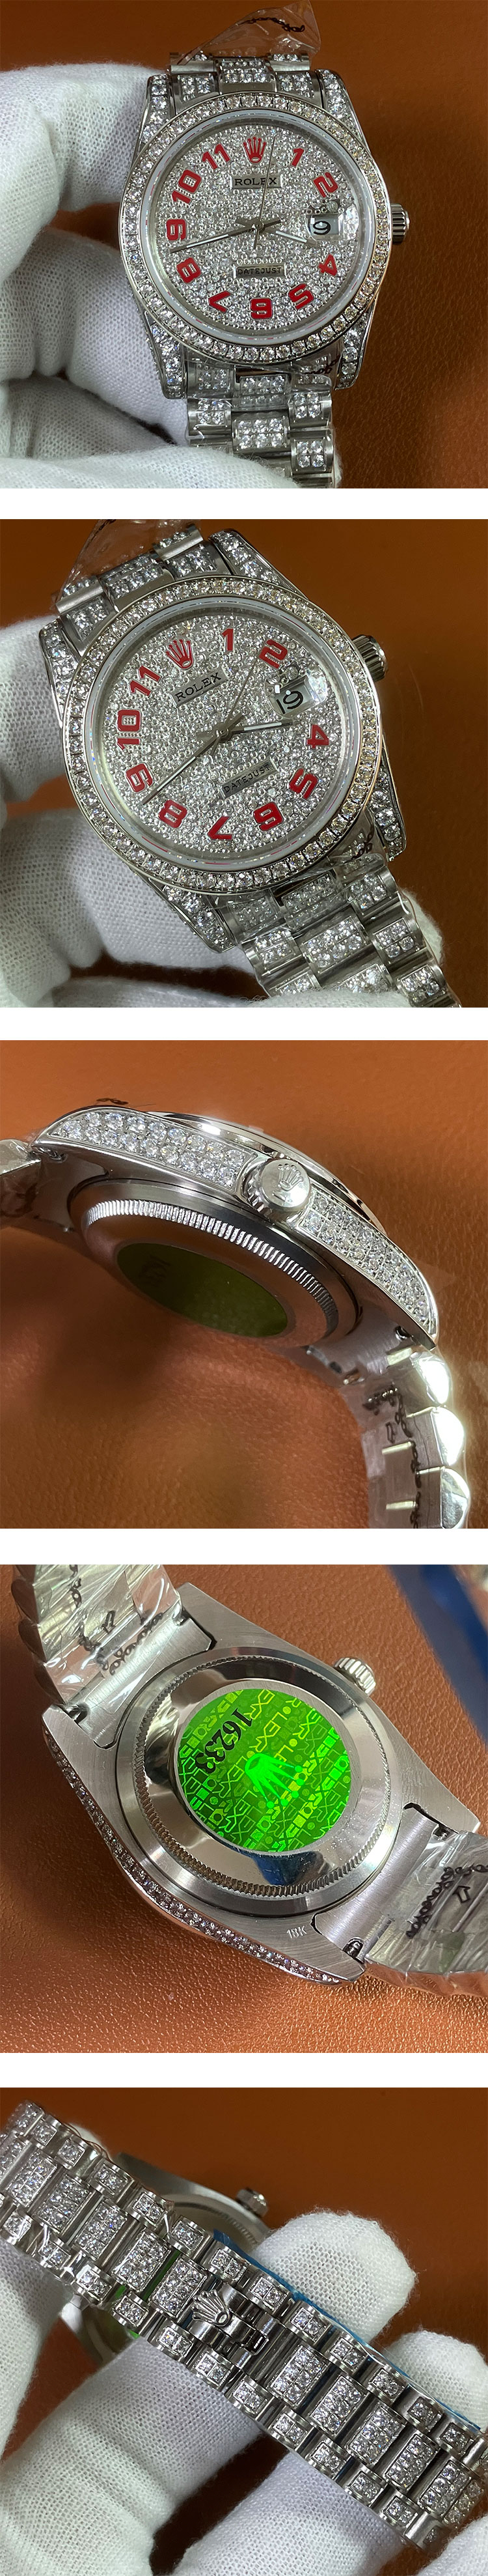 【お届け指定日も可能】満天の星 ロレックスコピー116200 デイトジャスト 36mm 新作腕時計